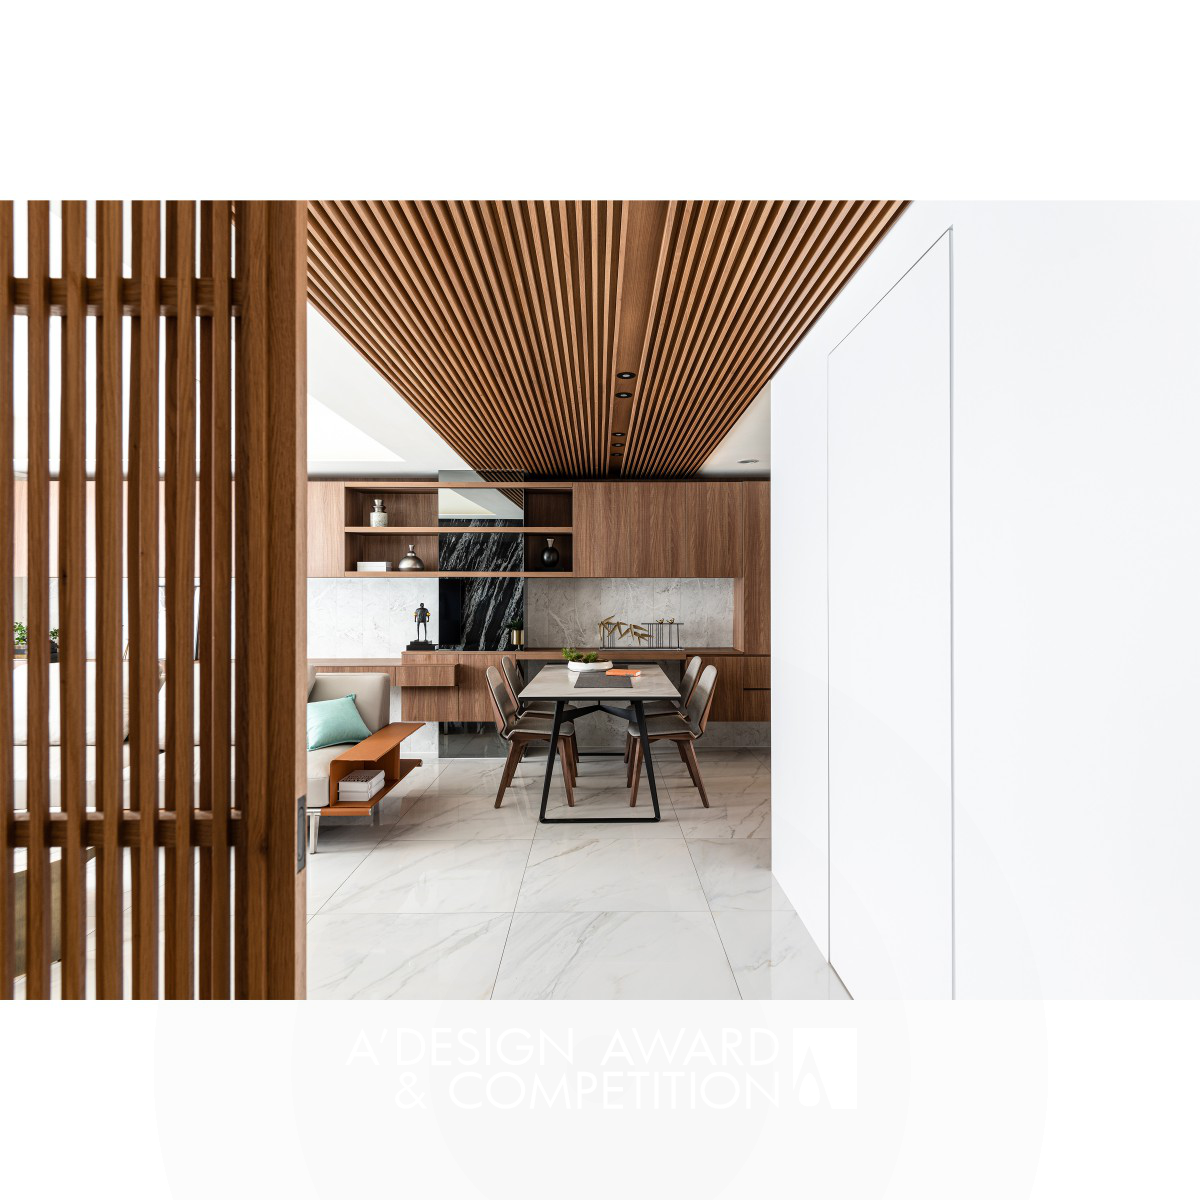 Kai Yuan Cheng Residential interior design 